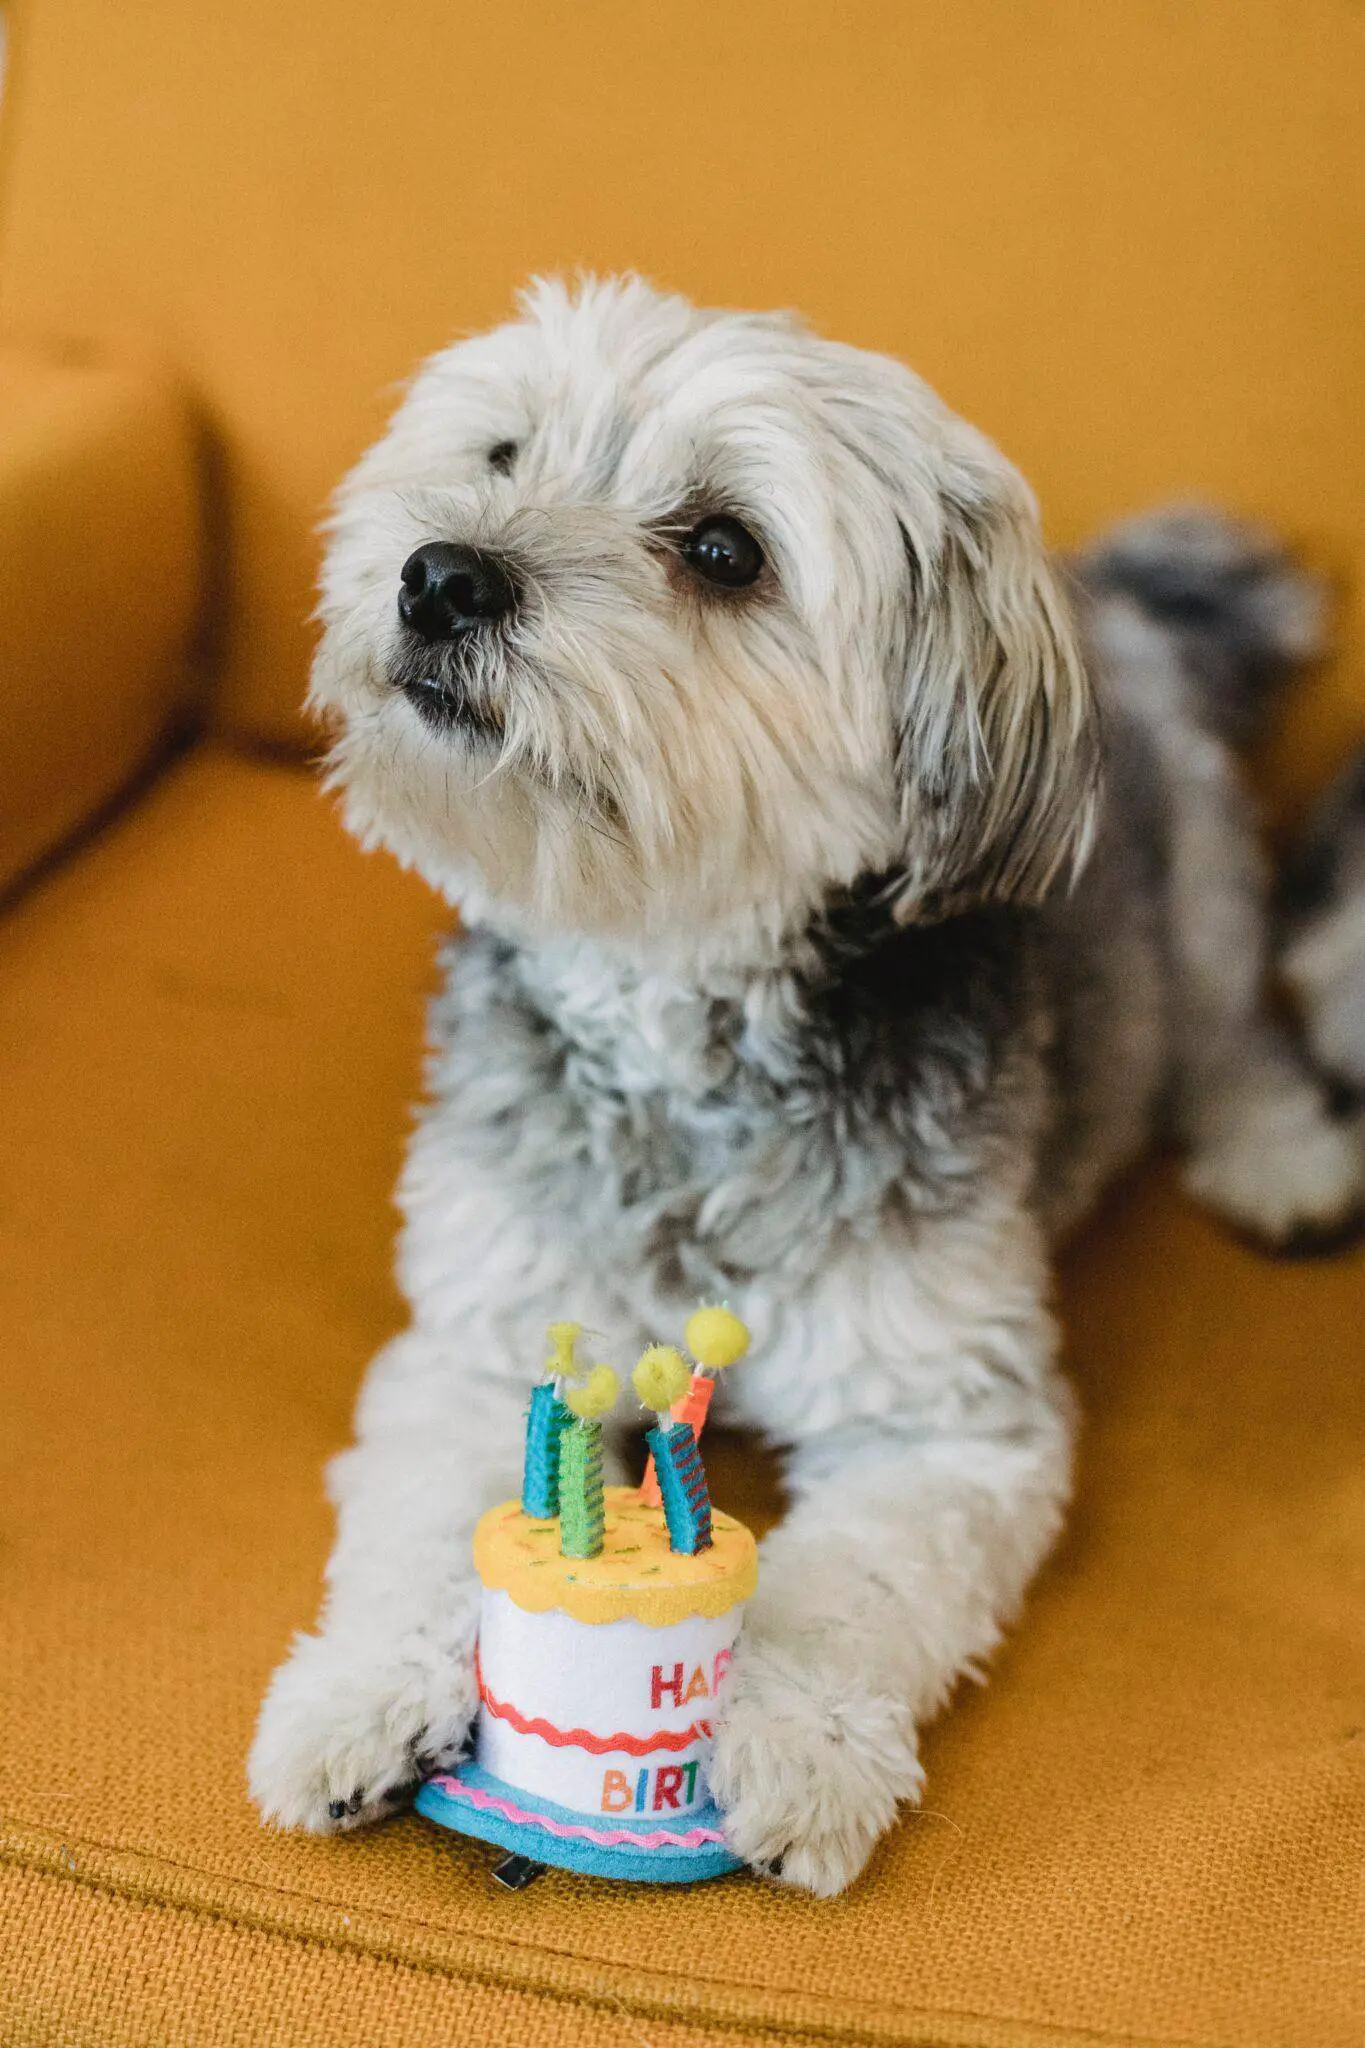 Dog birthday cake recipes